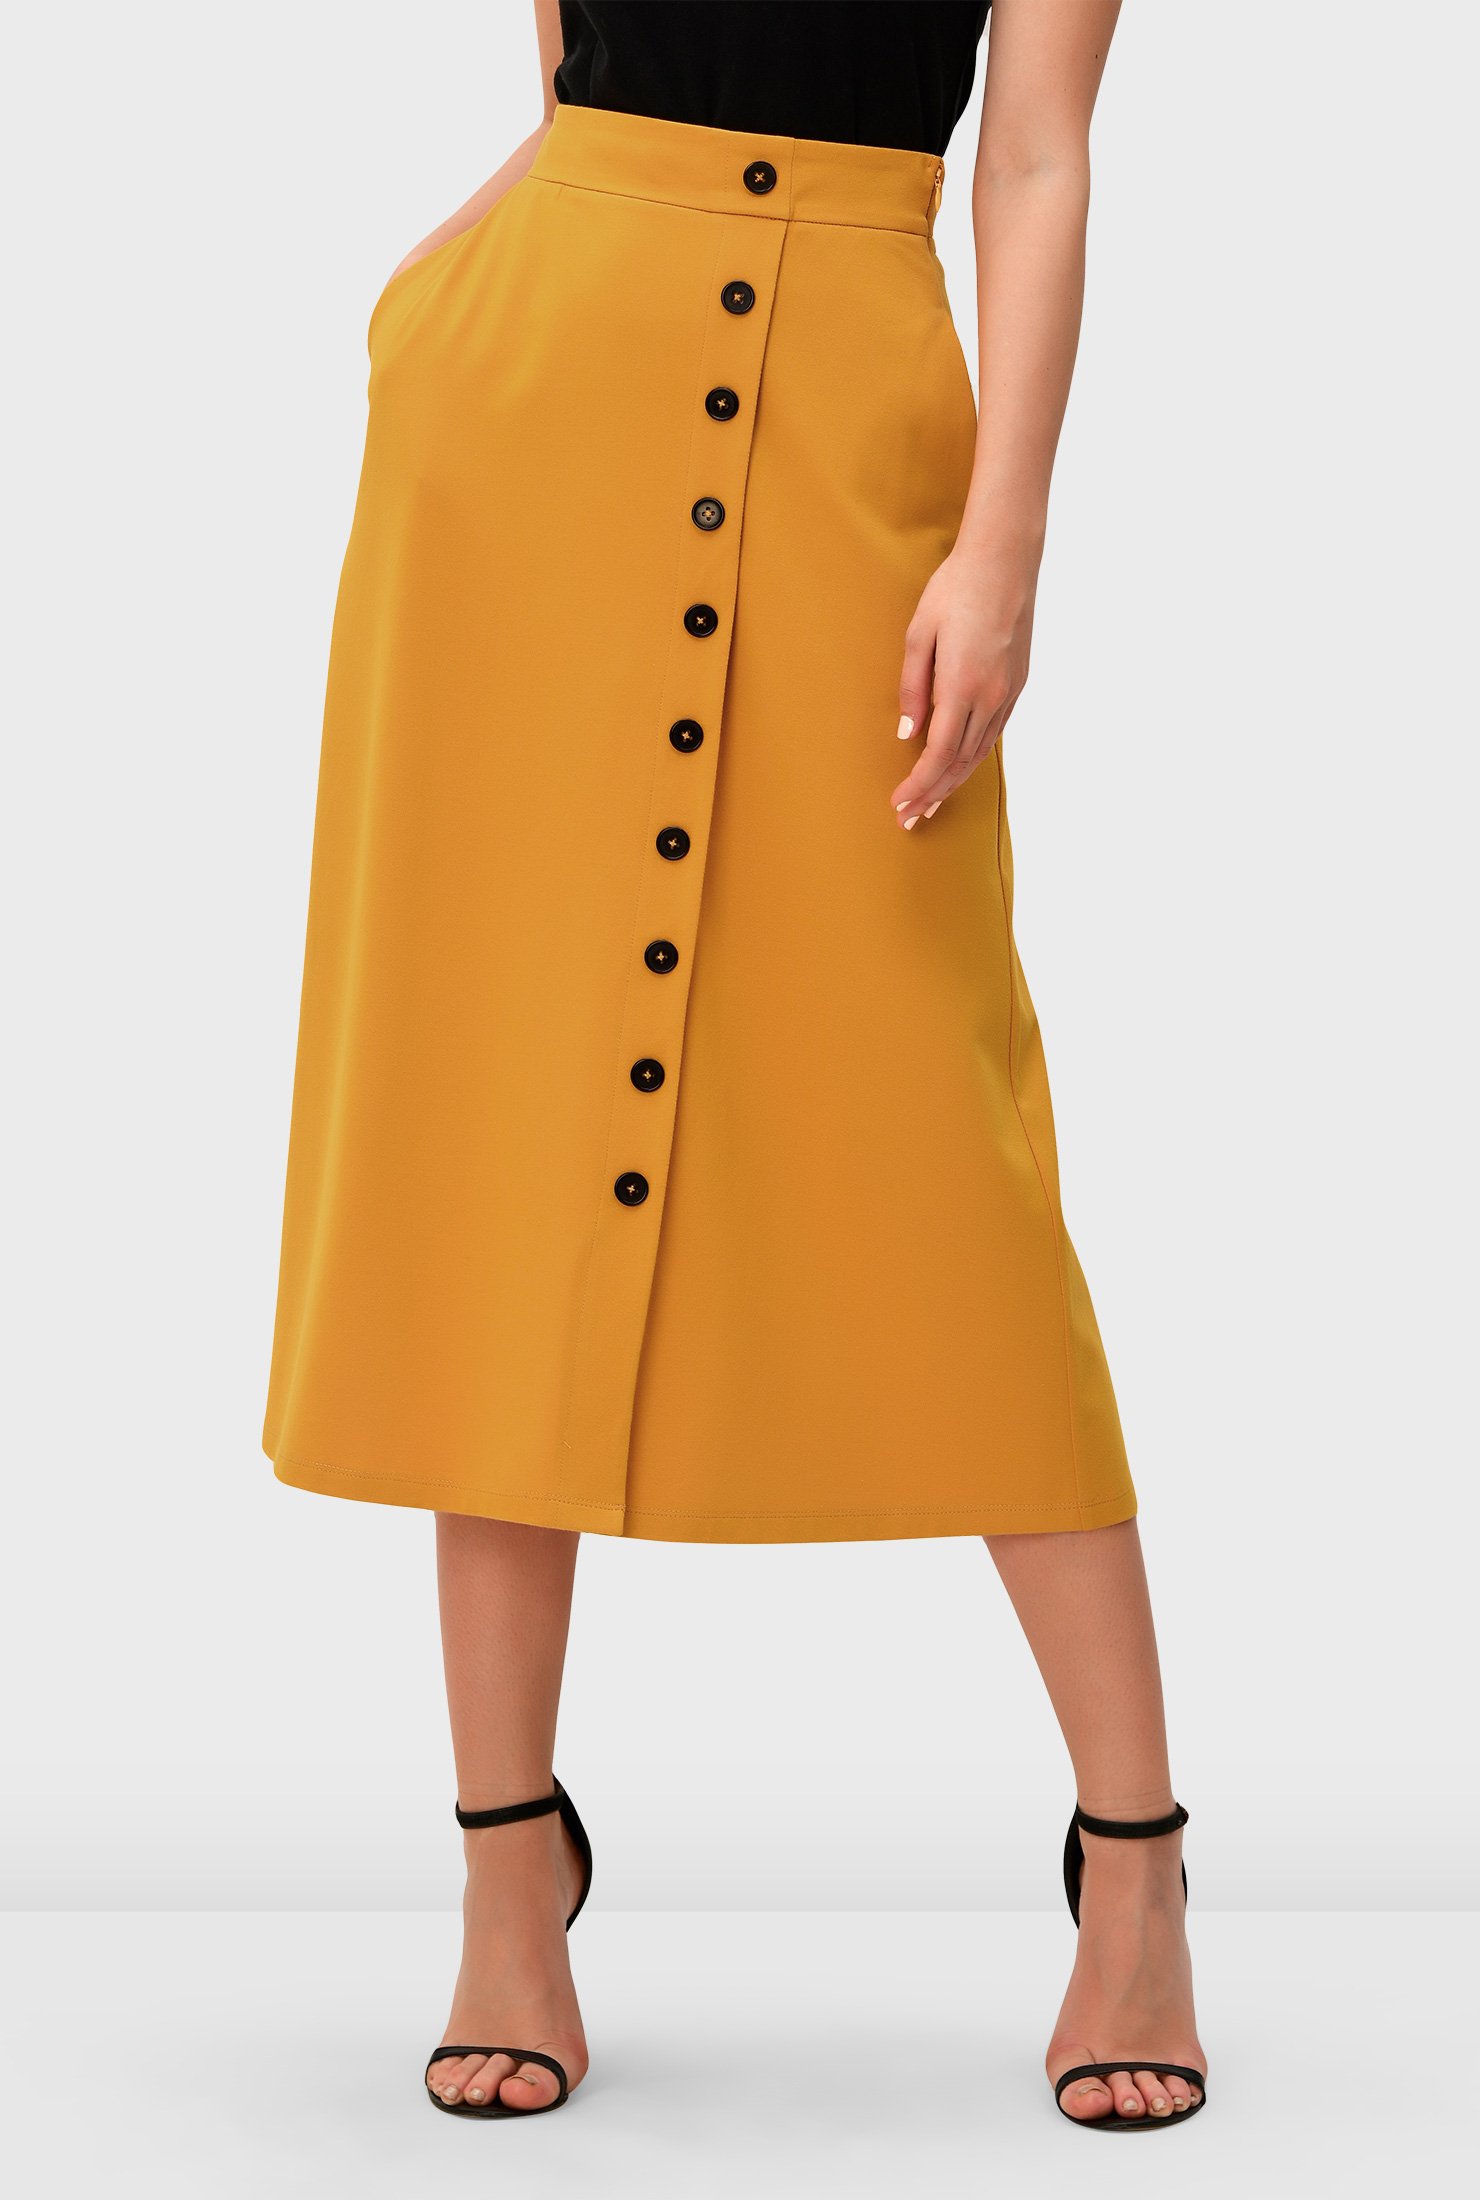 Zapelle Custom Clothing | Women's Fashion Clothing | Sizes 0-36W Custom ...